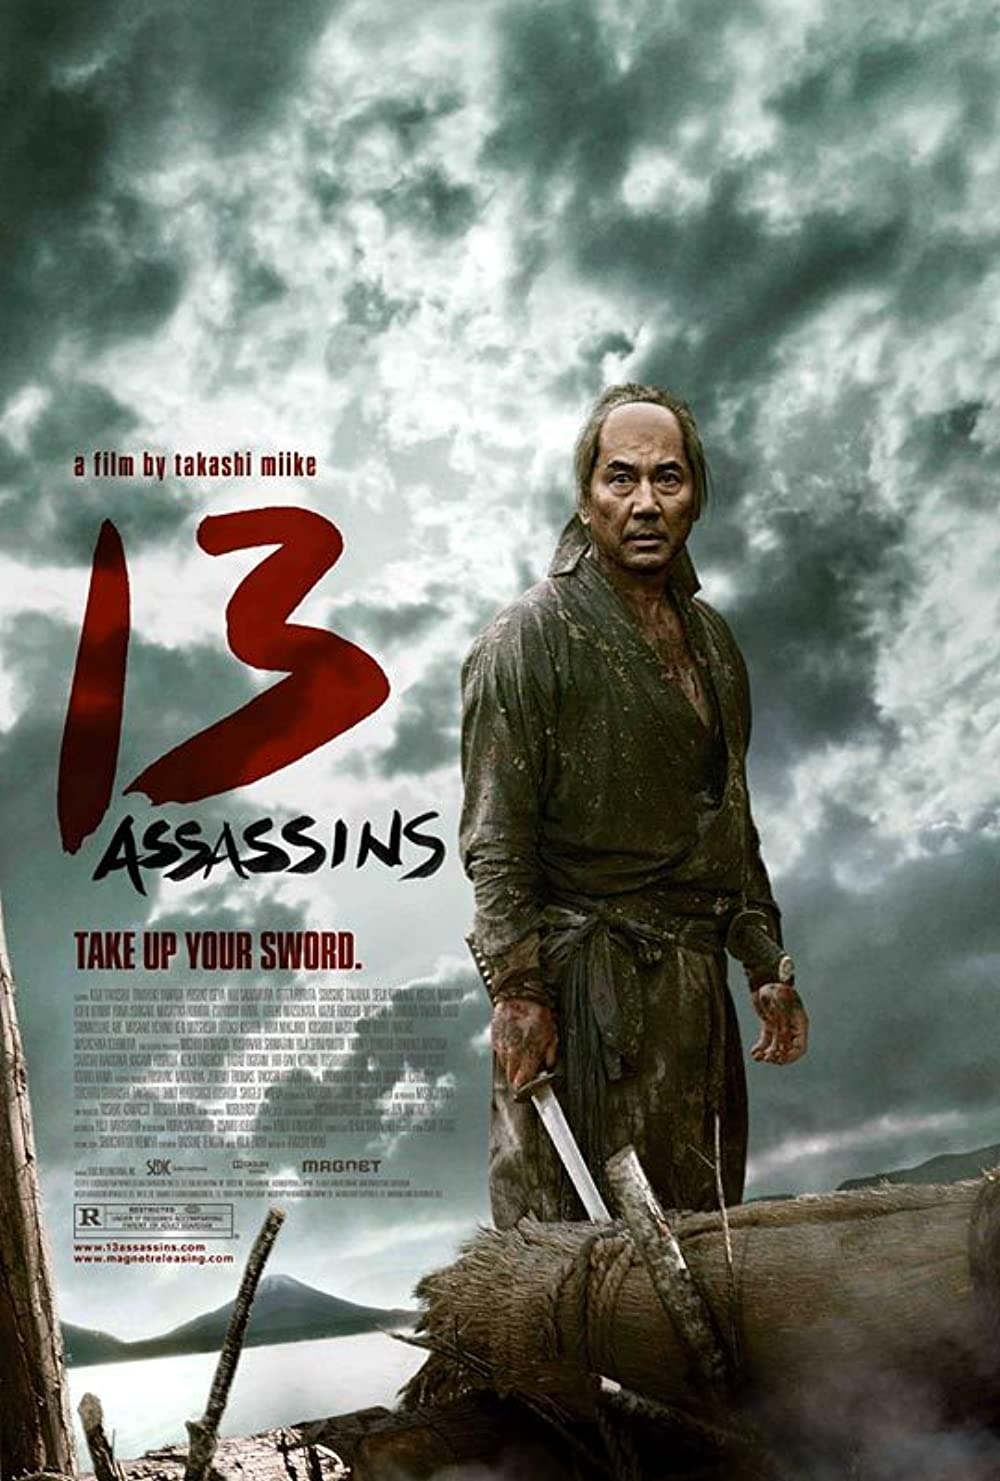 Phim hành vi võ thuật Nhật Bản: 13 quí khách hàng - 13 Assassins (2010)